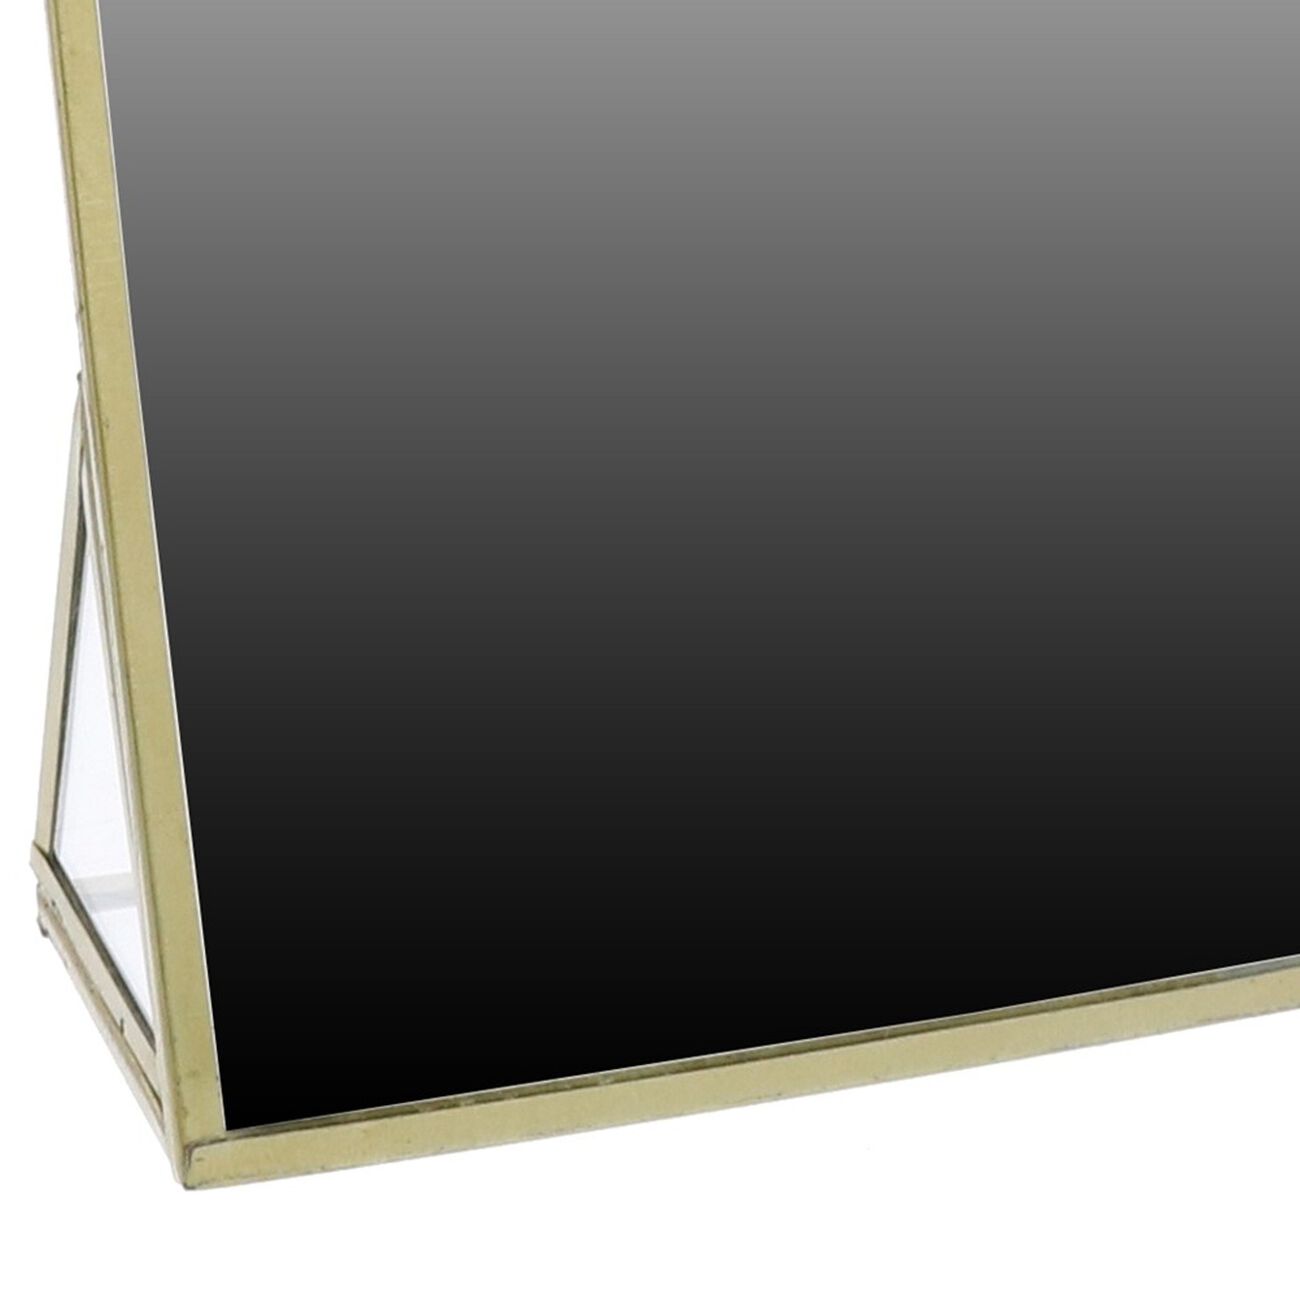 6 Inch Metal Frame Vanity Mirror, Medium, Brown